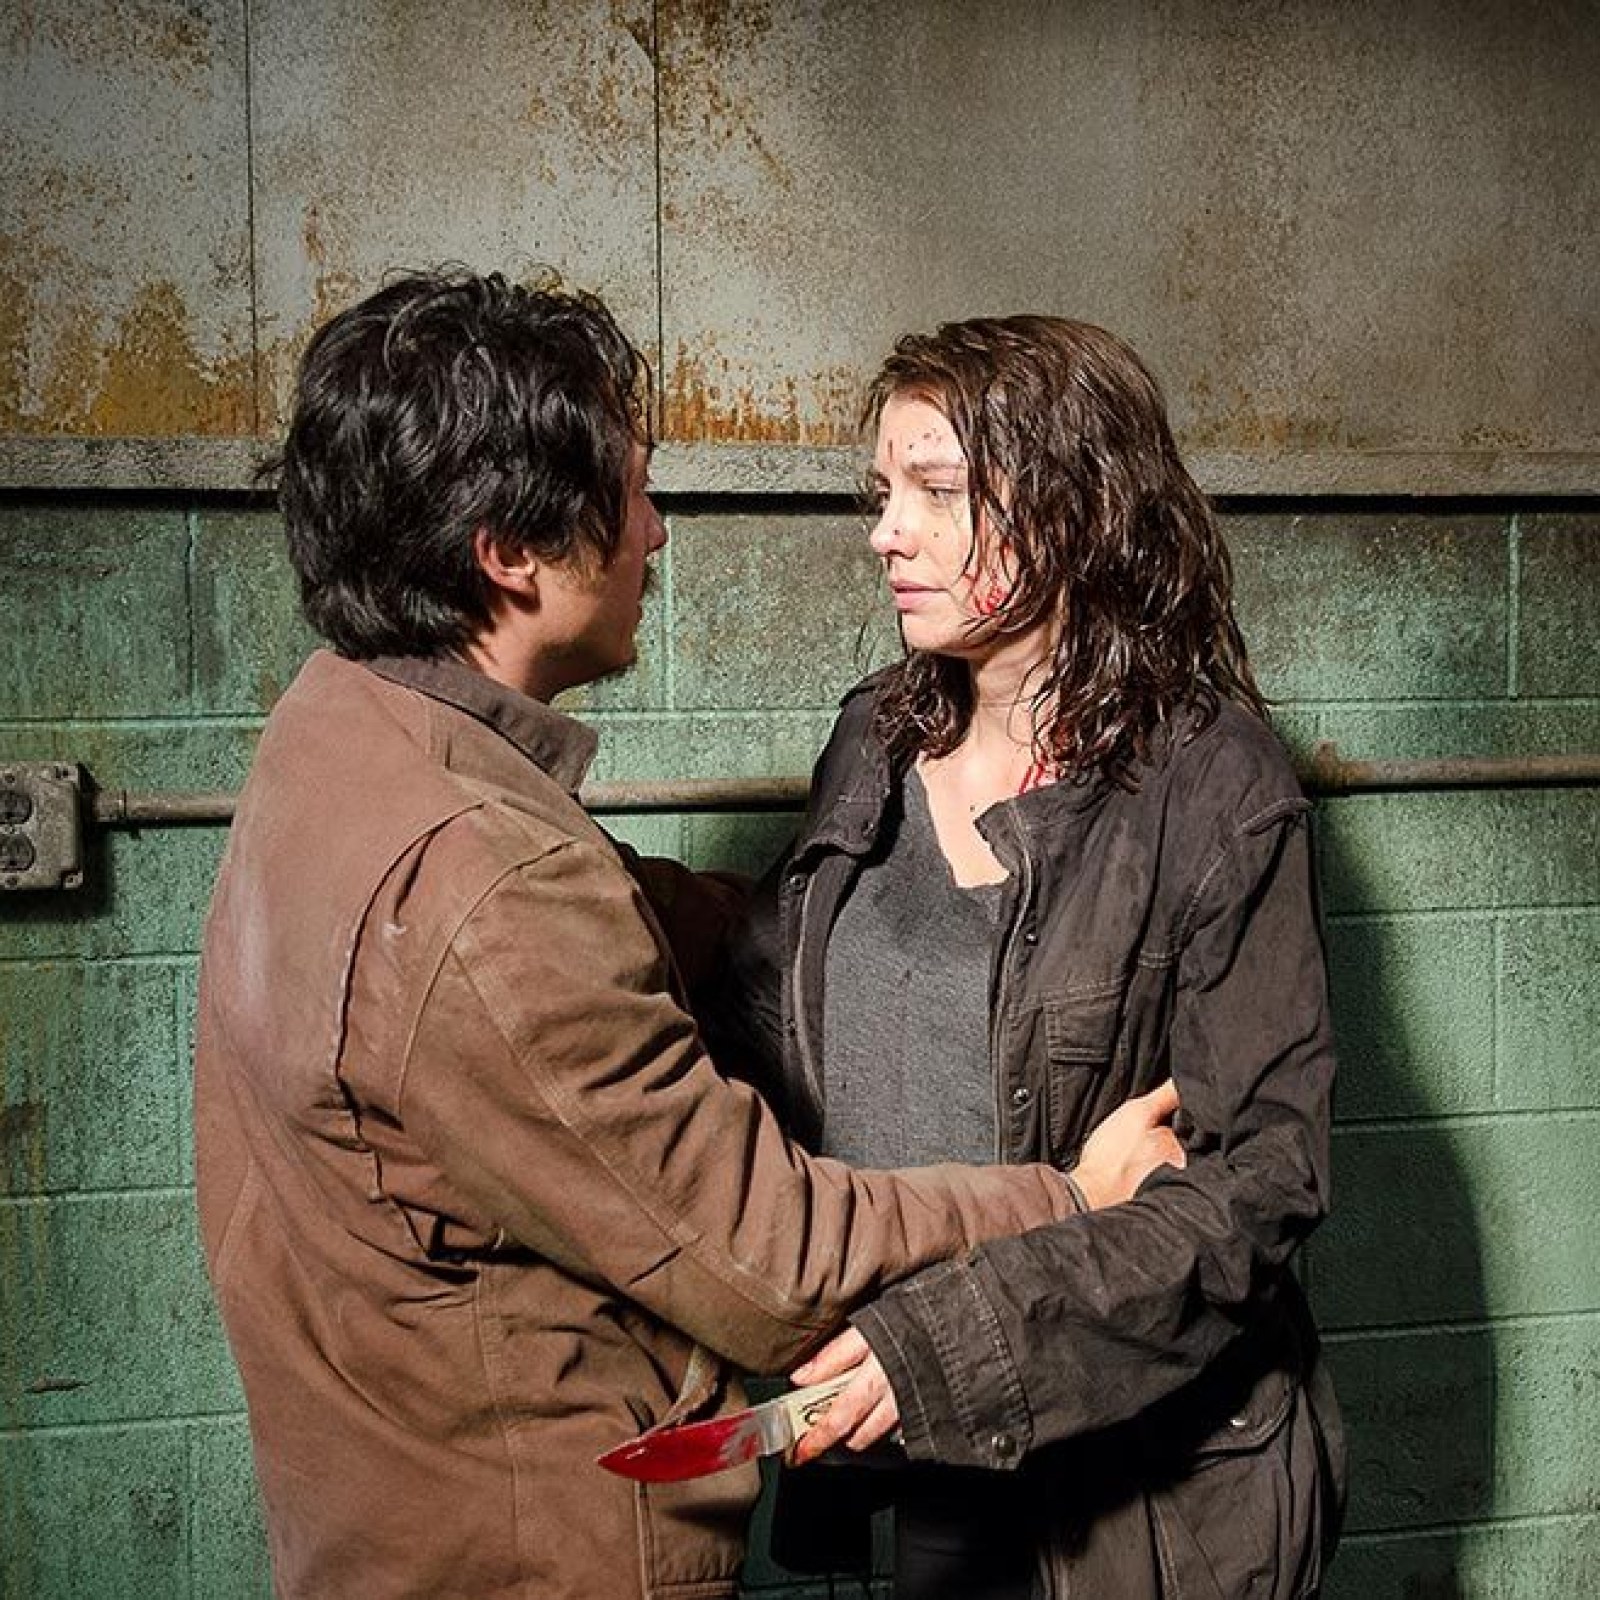 Walking Dead' Season 6 Spoilers: Why Did Maggie Cut Her Hair In Episode 15?